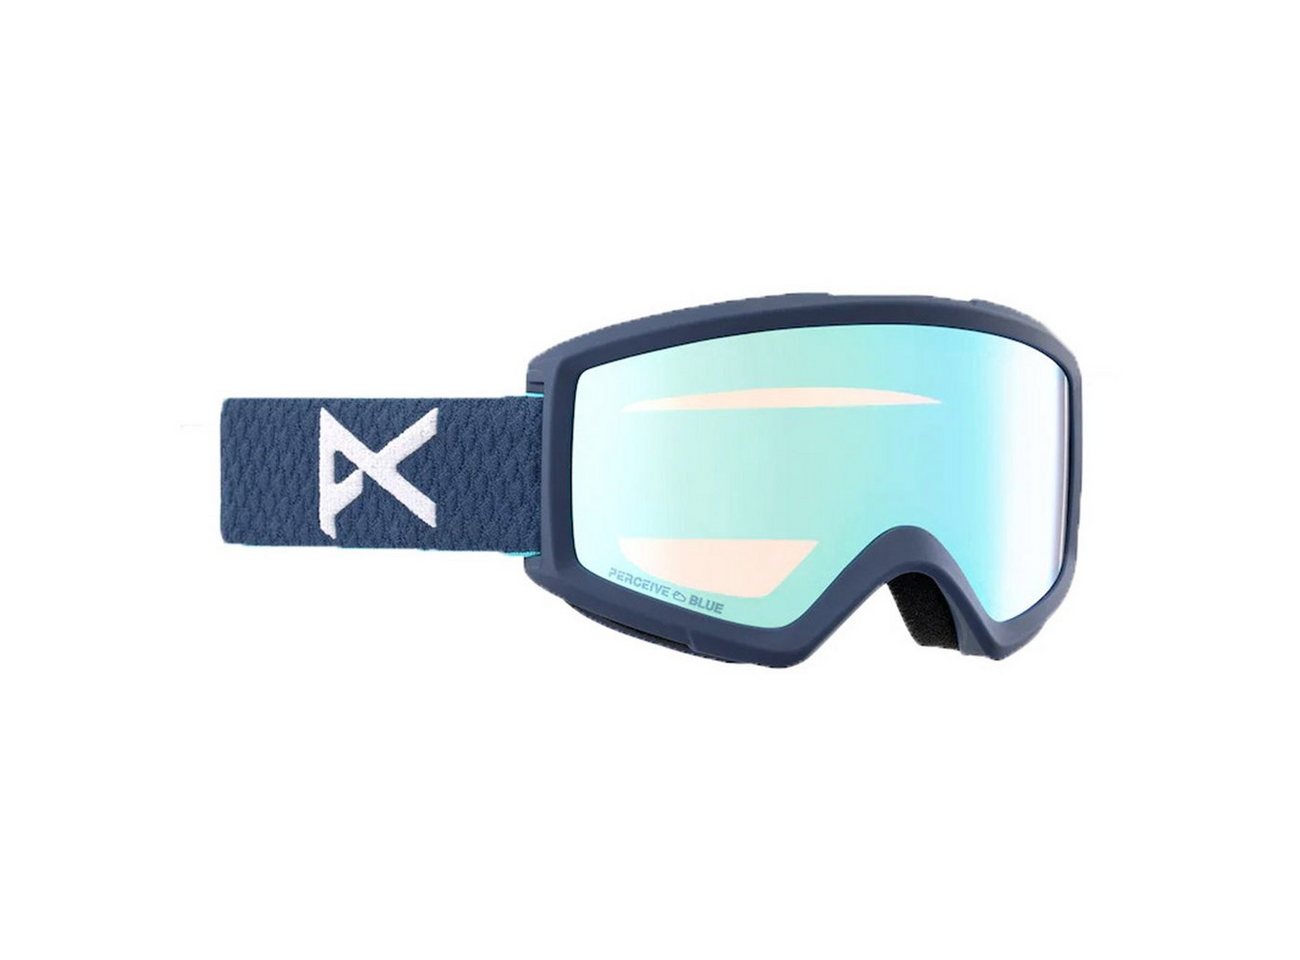 Anon Snowboardbrille, HELIX 2 PERCEIVE W/SPR von Anon